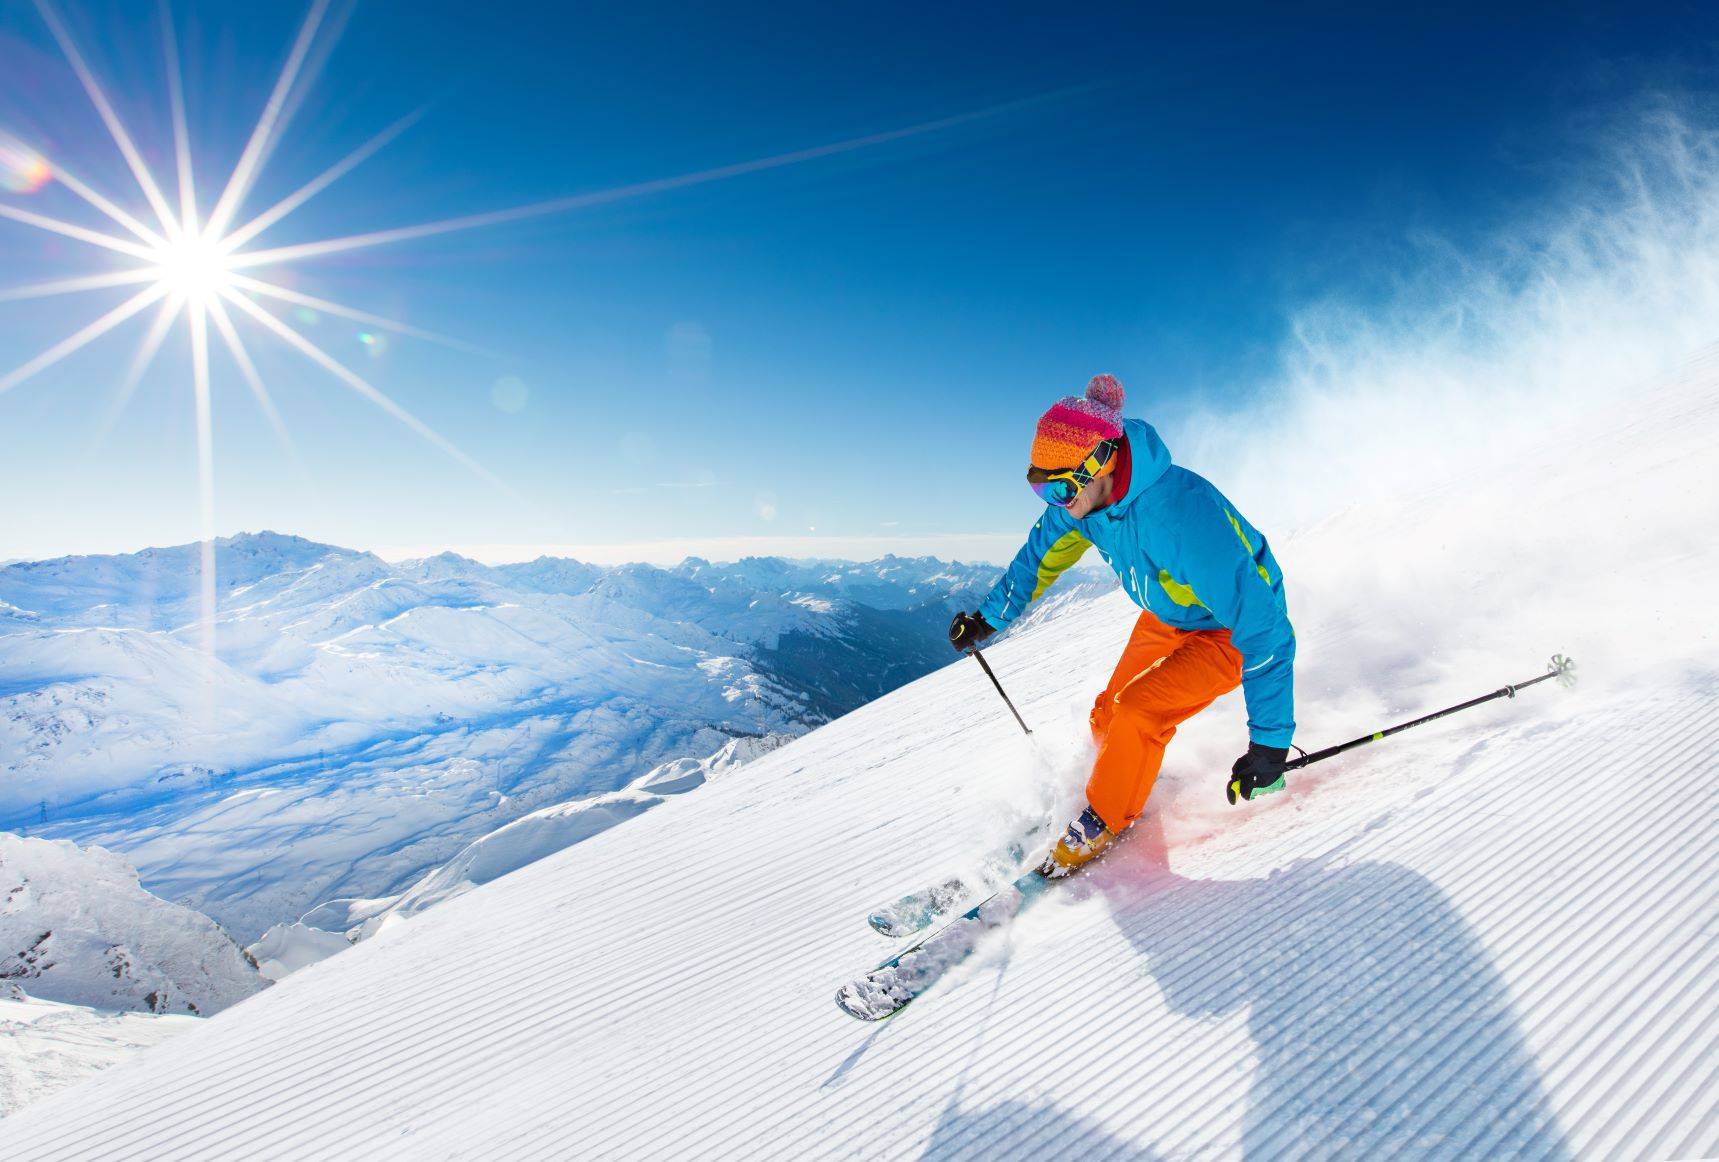 Jazda na nartach. Ćwiczenia przed nartami. Mężczyzna zjeżdża na nartach ze stoku.